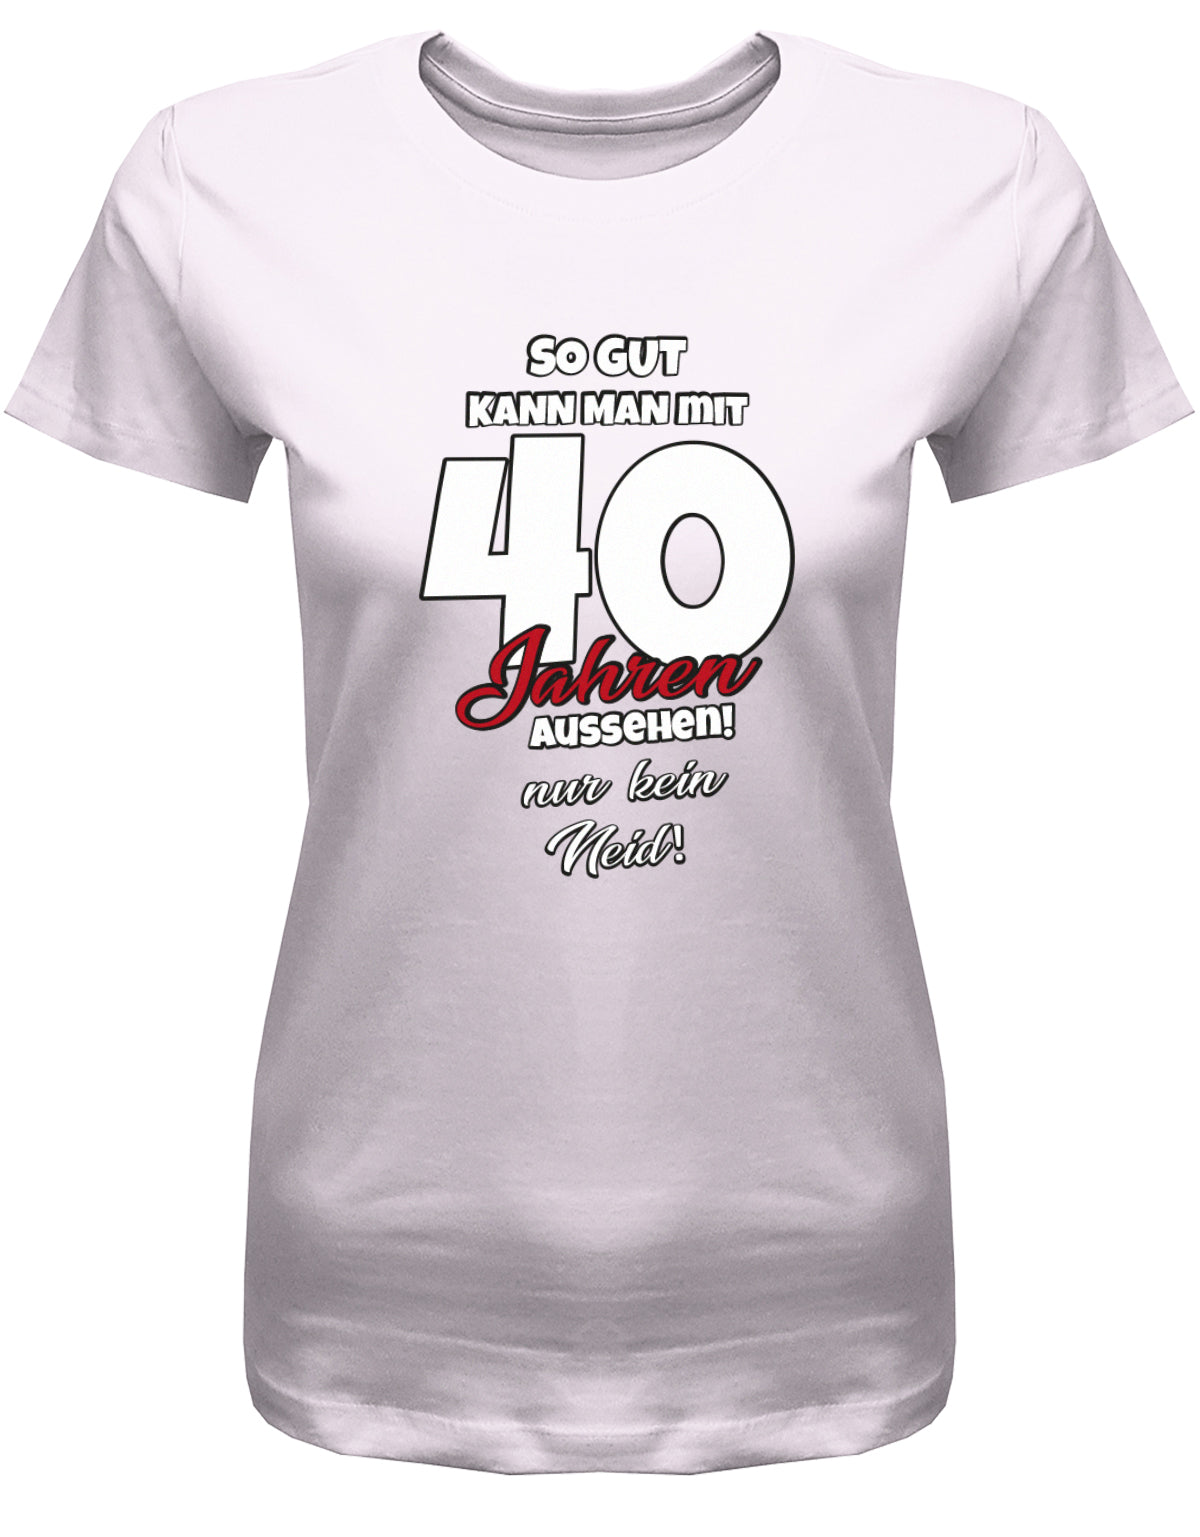 Lustiges T-Shirt zum 40 Geburtstag für die Frau Bedruckt mit So gut kann man mit 40 Jahren aussehen! Nur kein Neid! Rosa